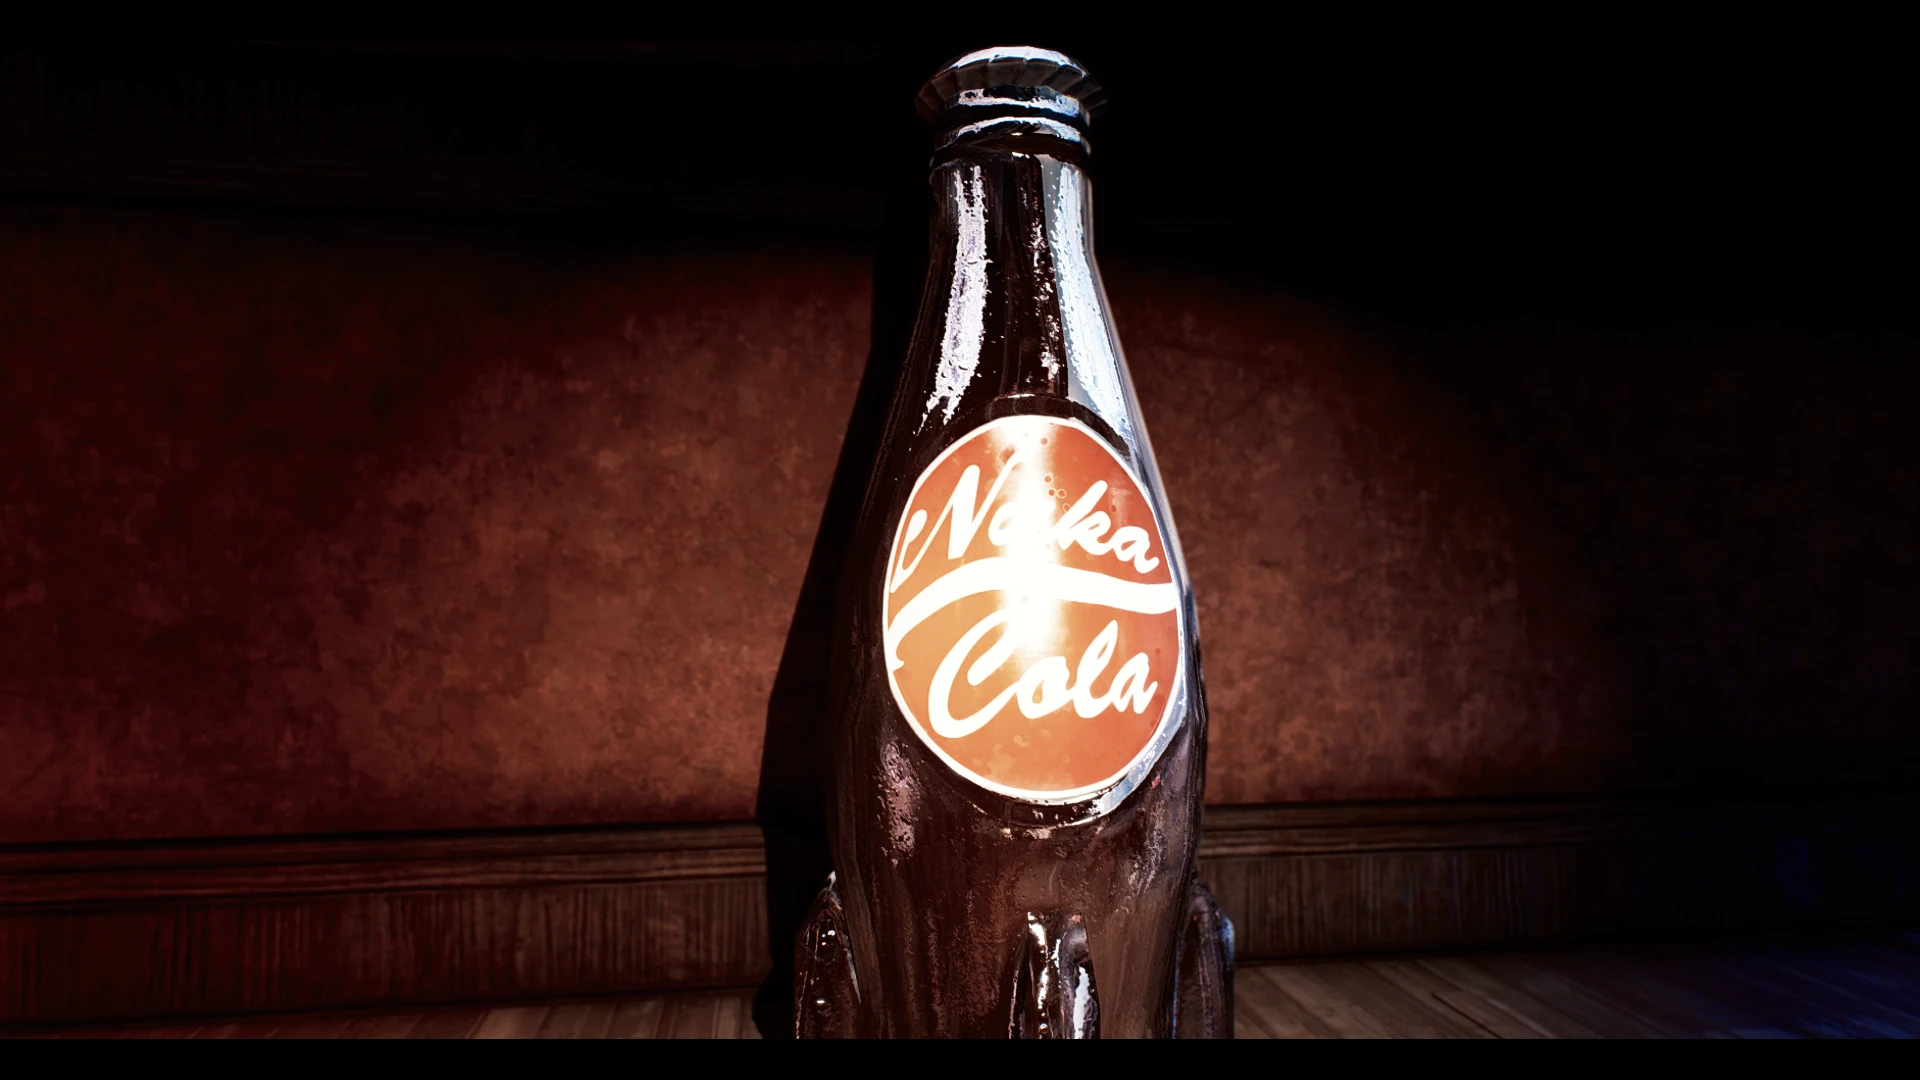 Fallout 4 nuka cola classic фото 72